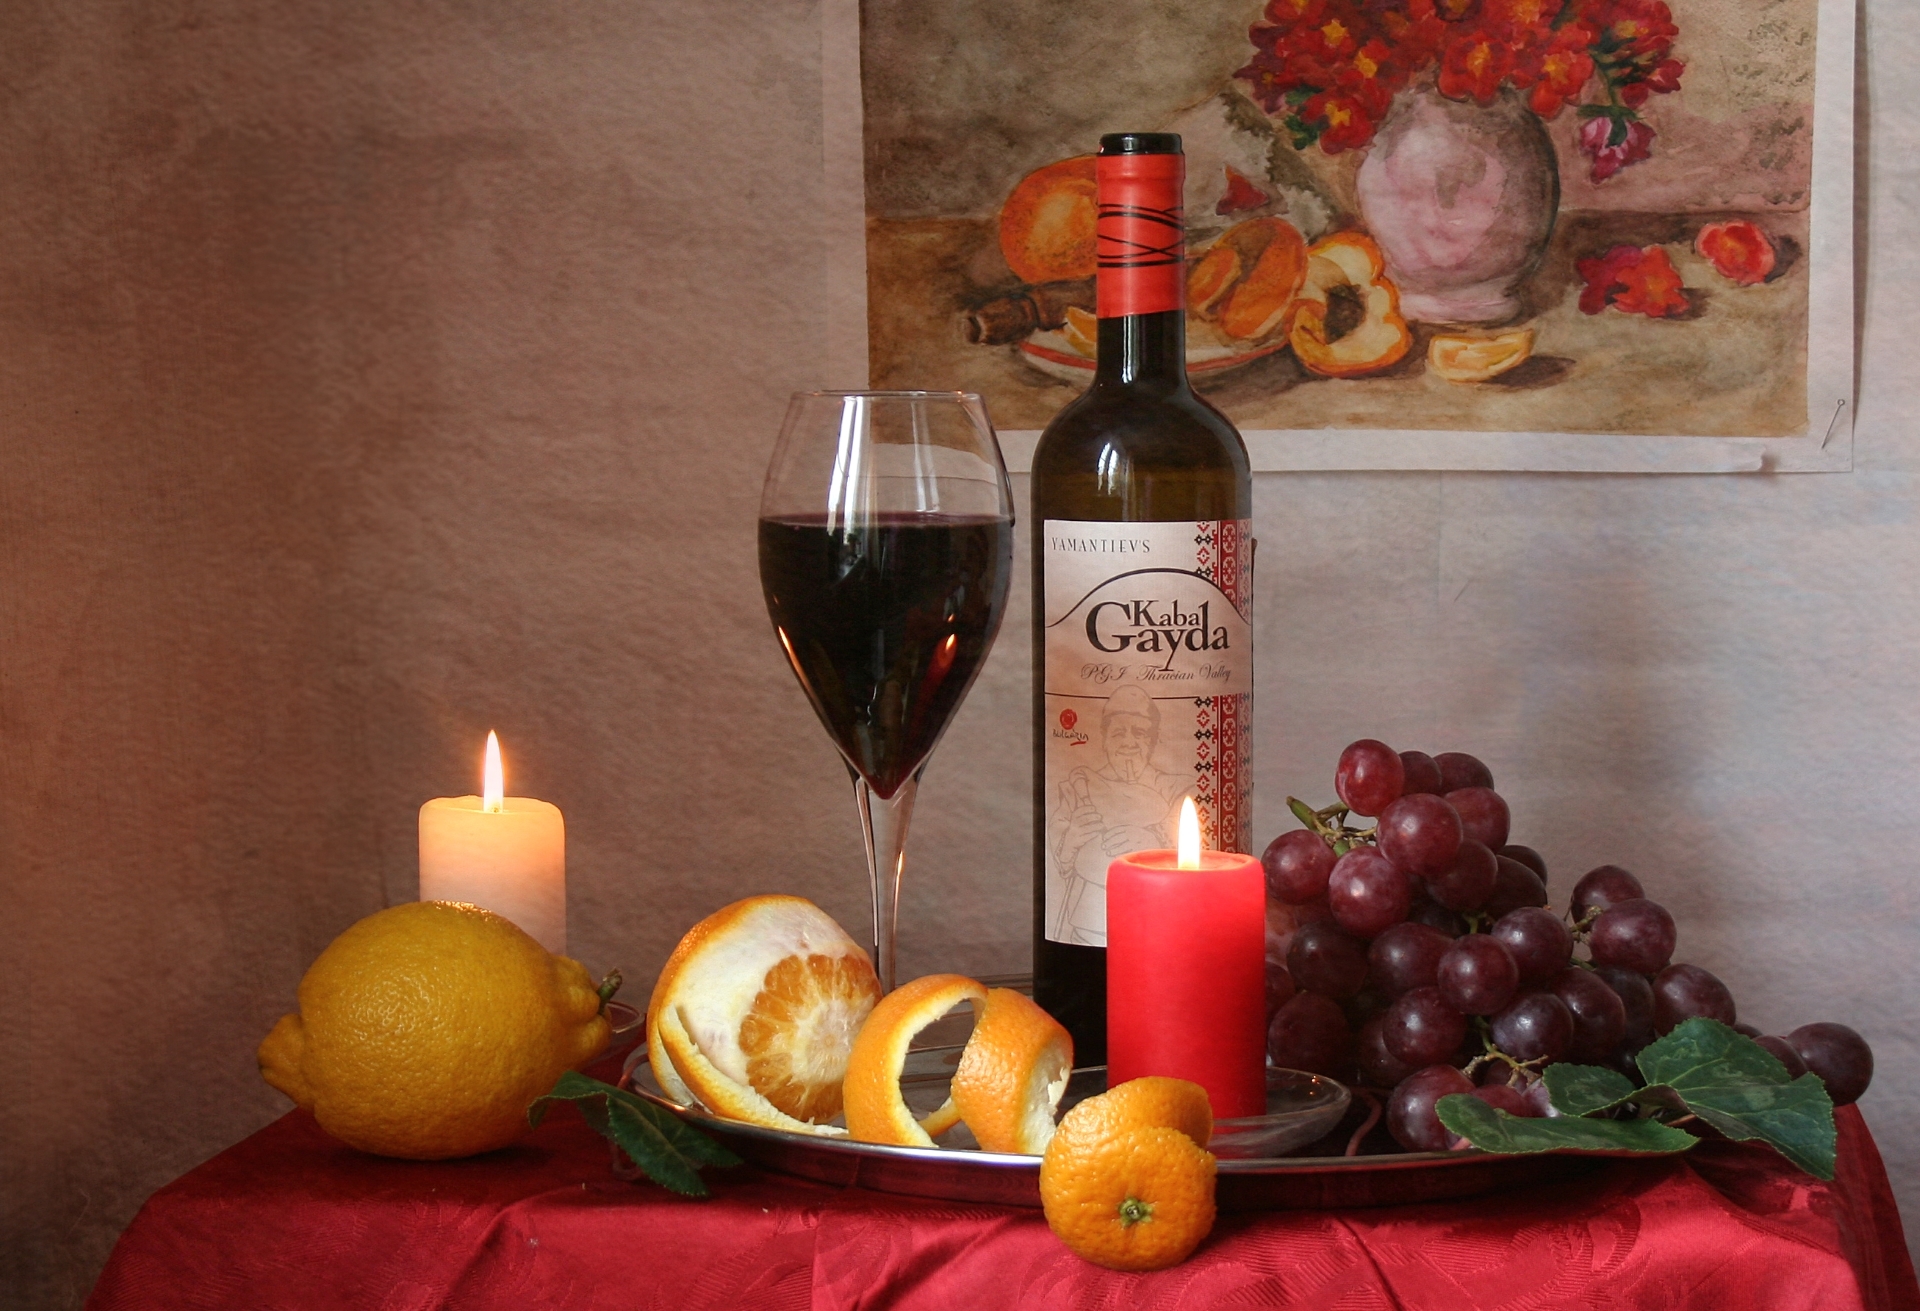 Виноградно лимонного вина. Вино и фрукты. Натюрморт с вином. Вино и фрукты на столе и свеча. Натюрморт с бокалом вина и фруктами.